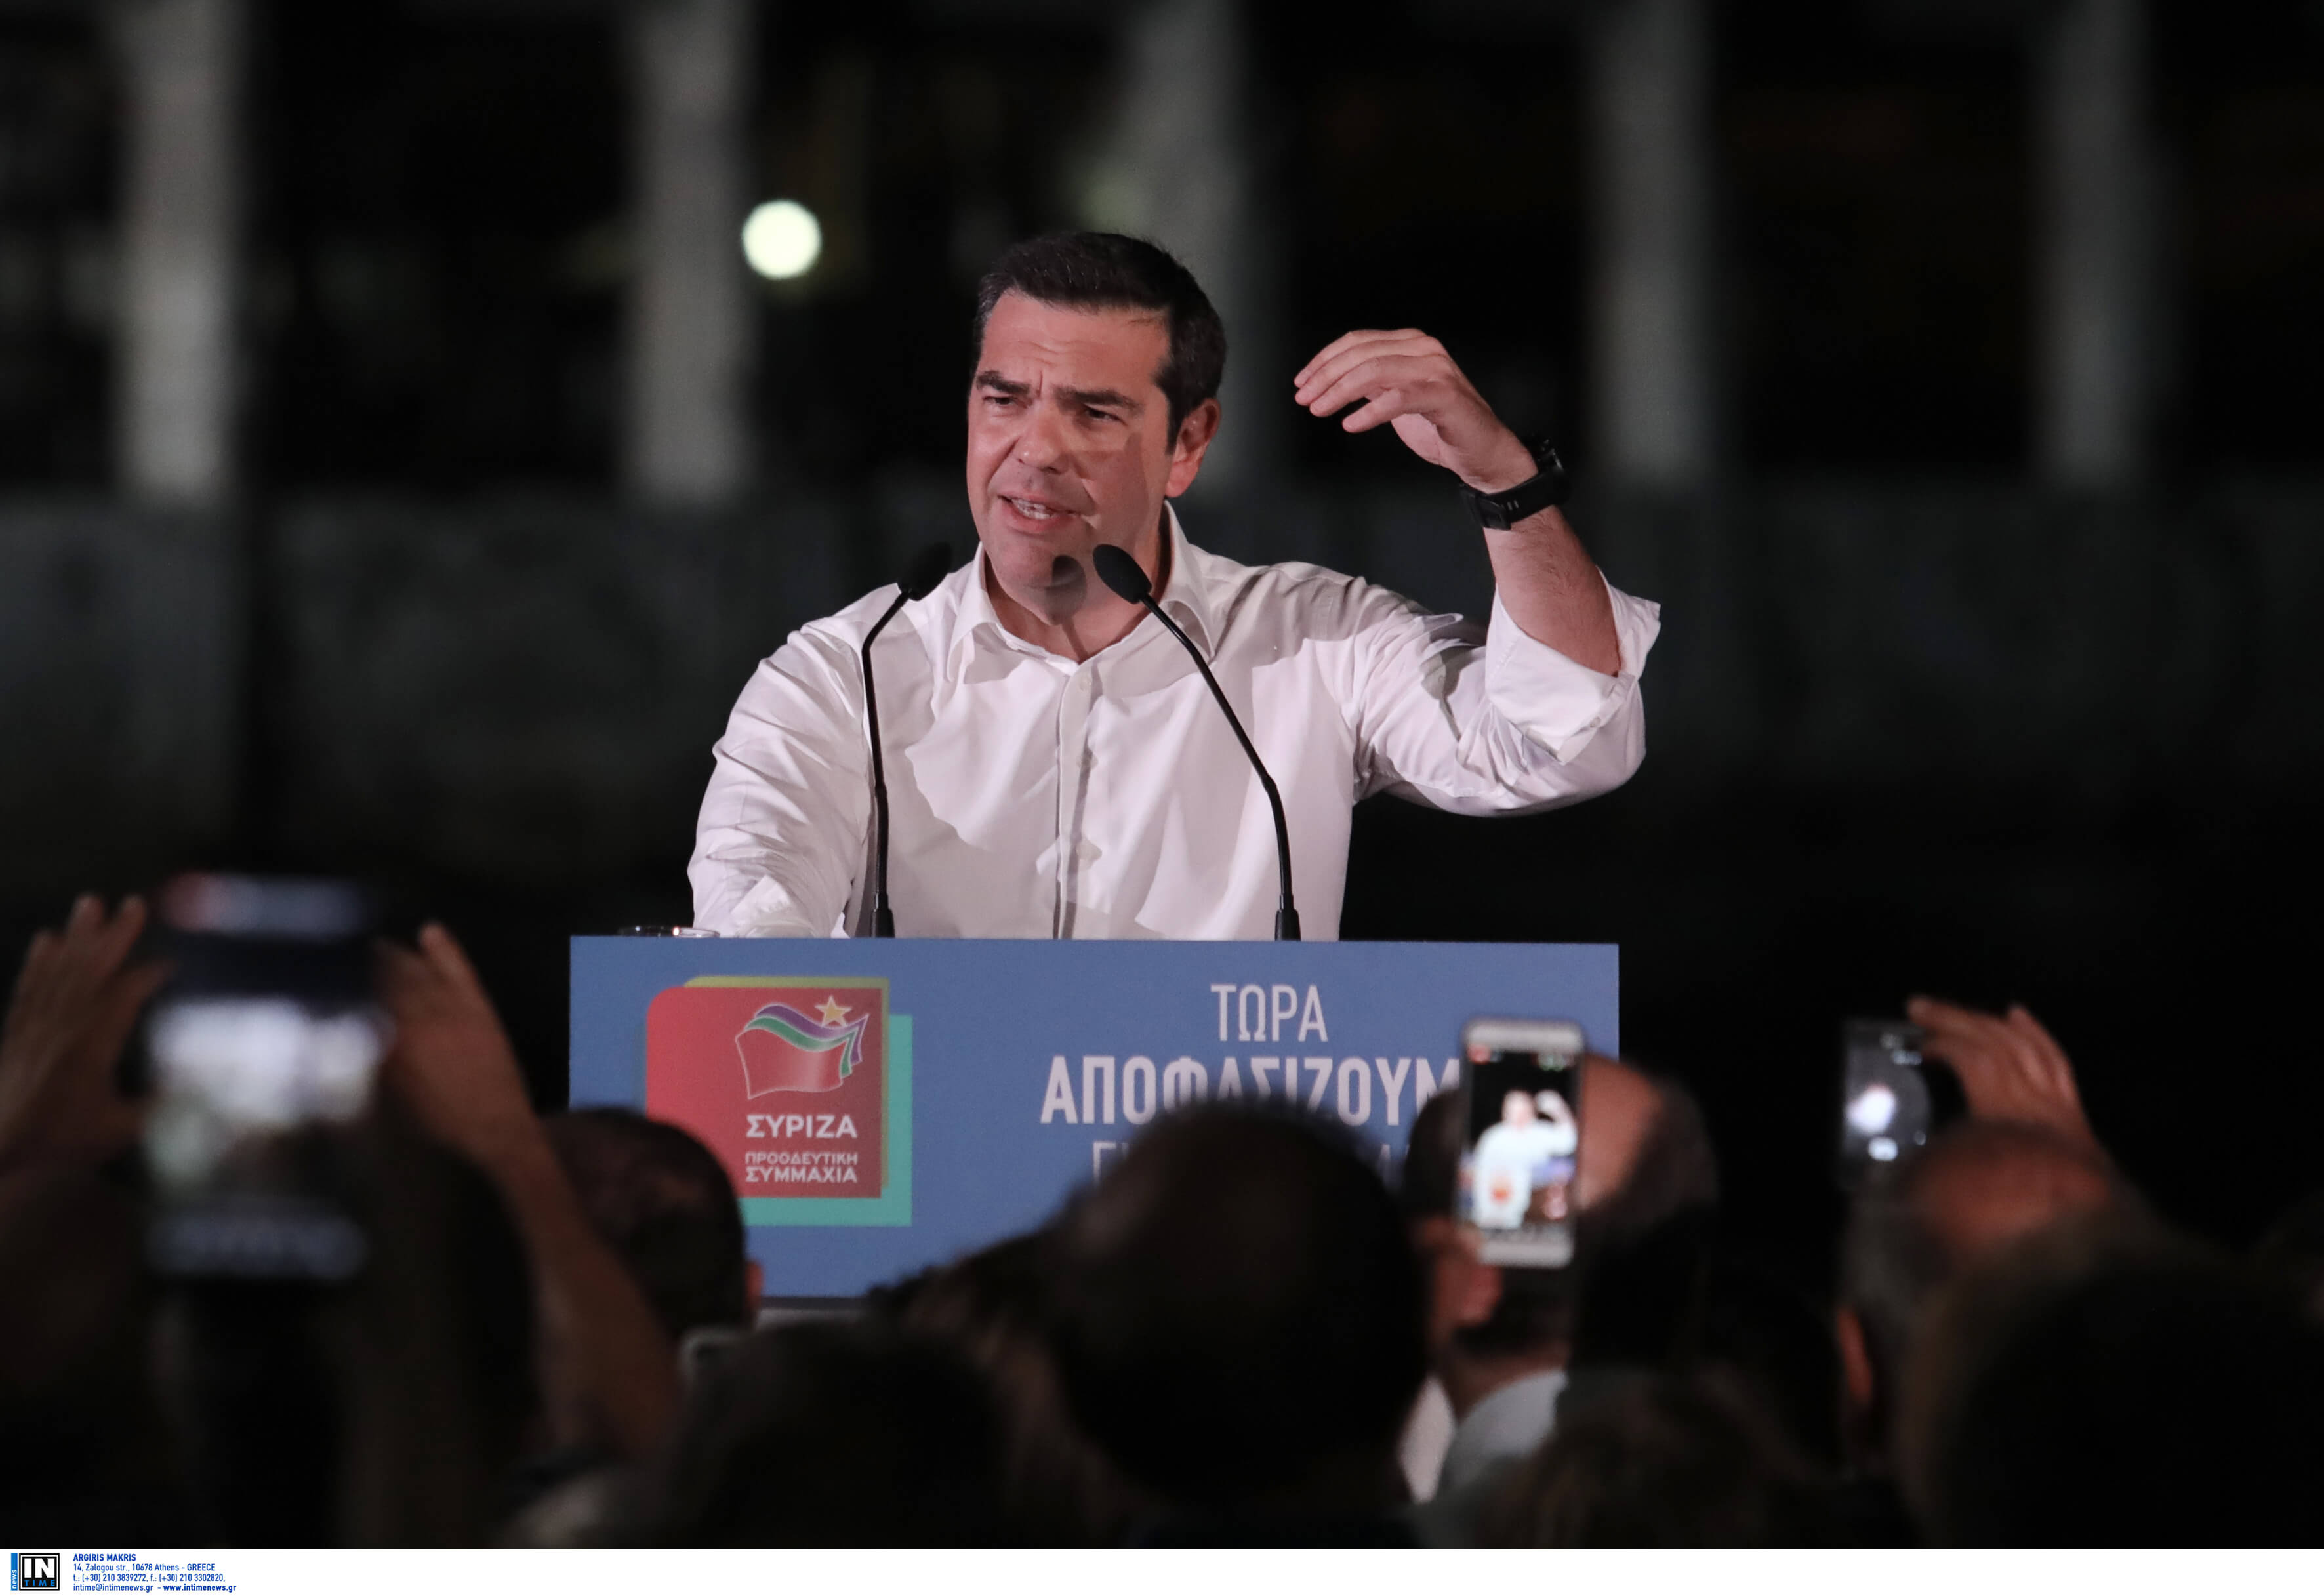 Εκλογές 2019 – Τσίπρας: Μπορούμε να καλύψουμε την διαφορά! Όλη η ομιλία στη Δραπετσώνα